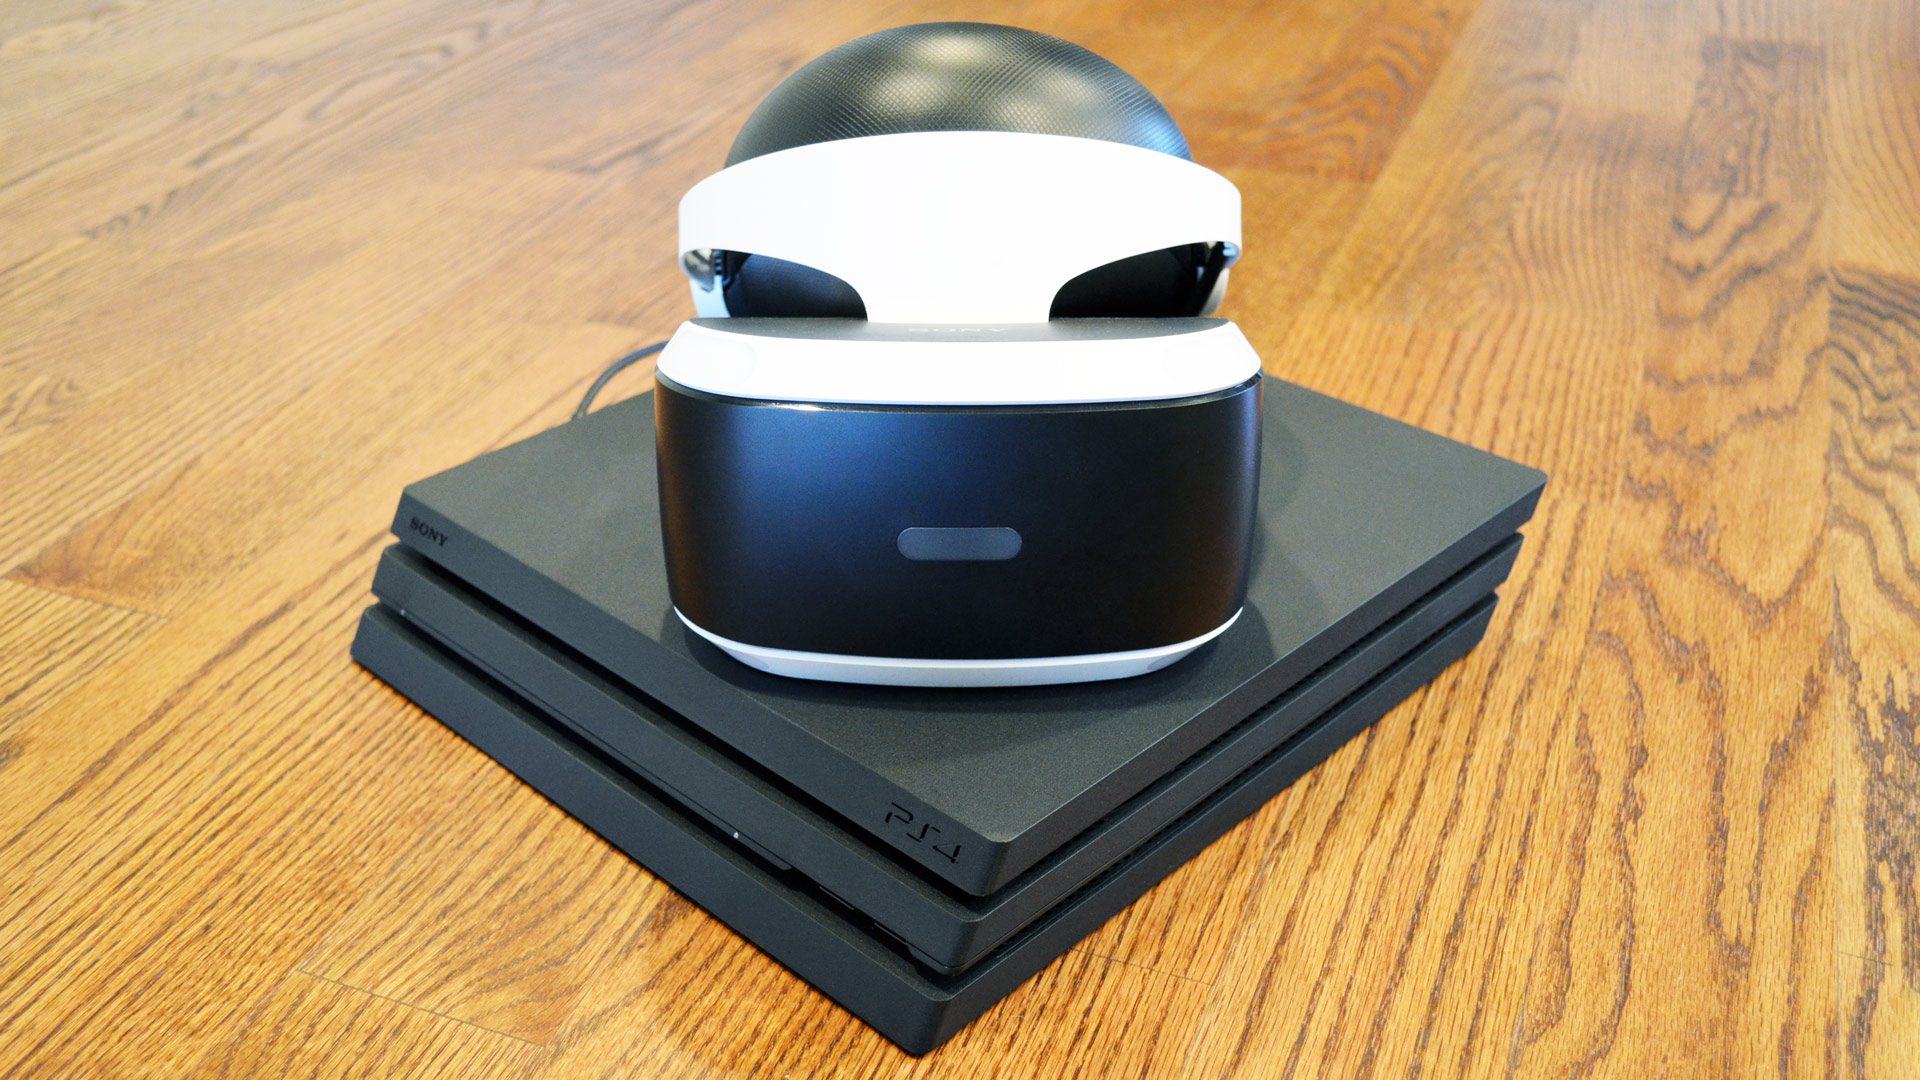 Per ongeluk Onafhankelijkheid Vlucht PlayStation VR on PS4 Pro vs. PS4 Comparison Review